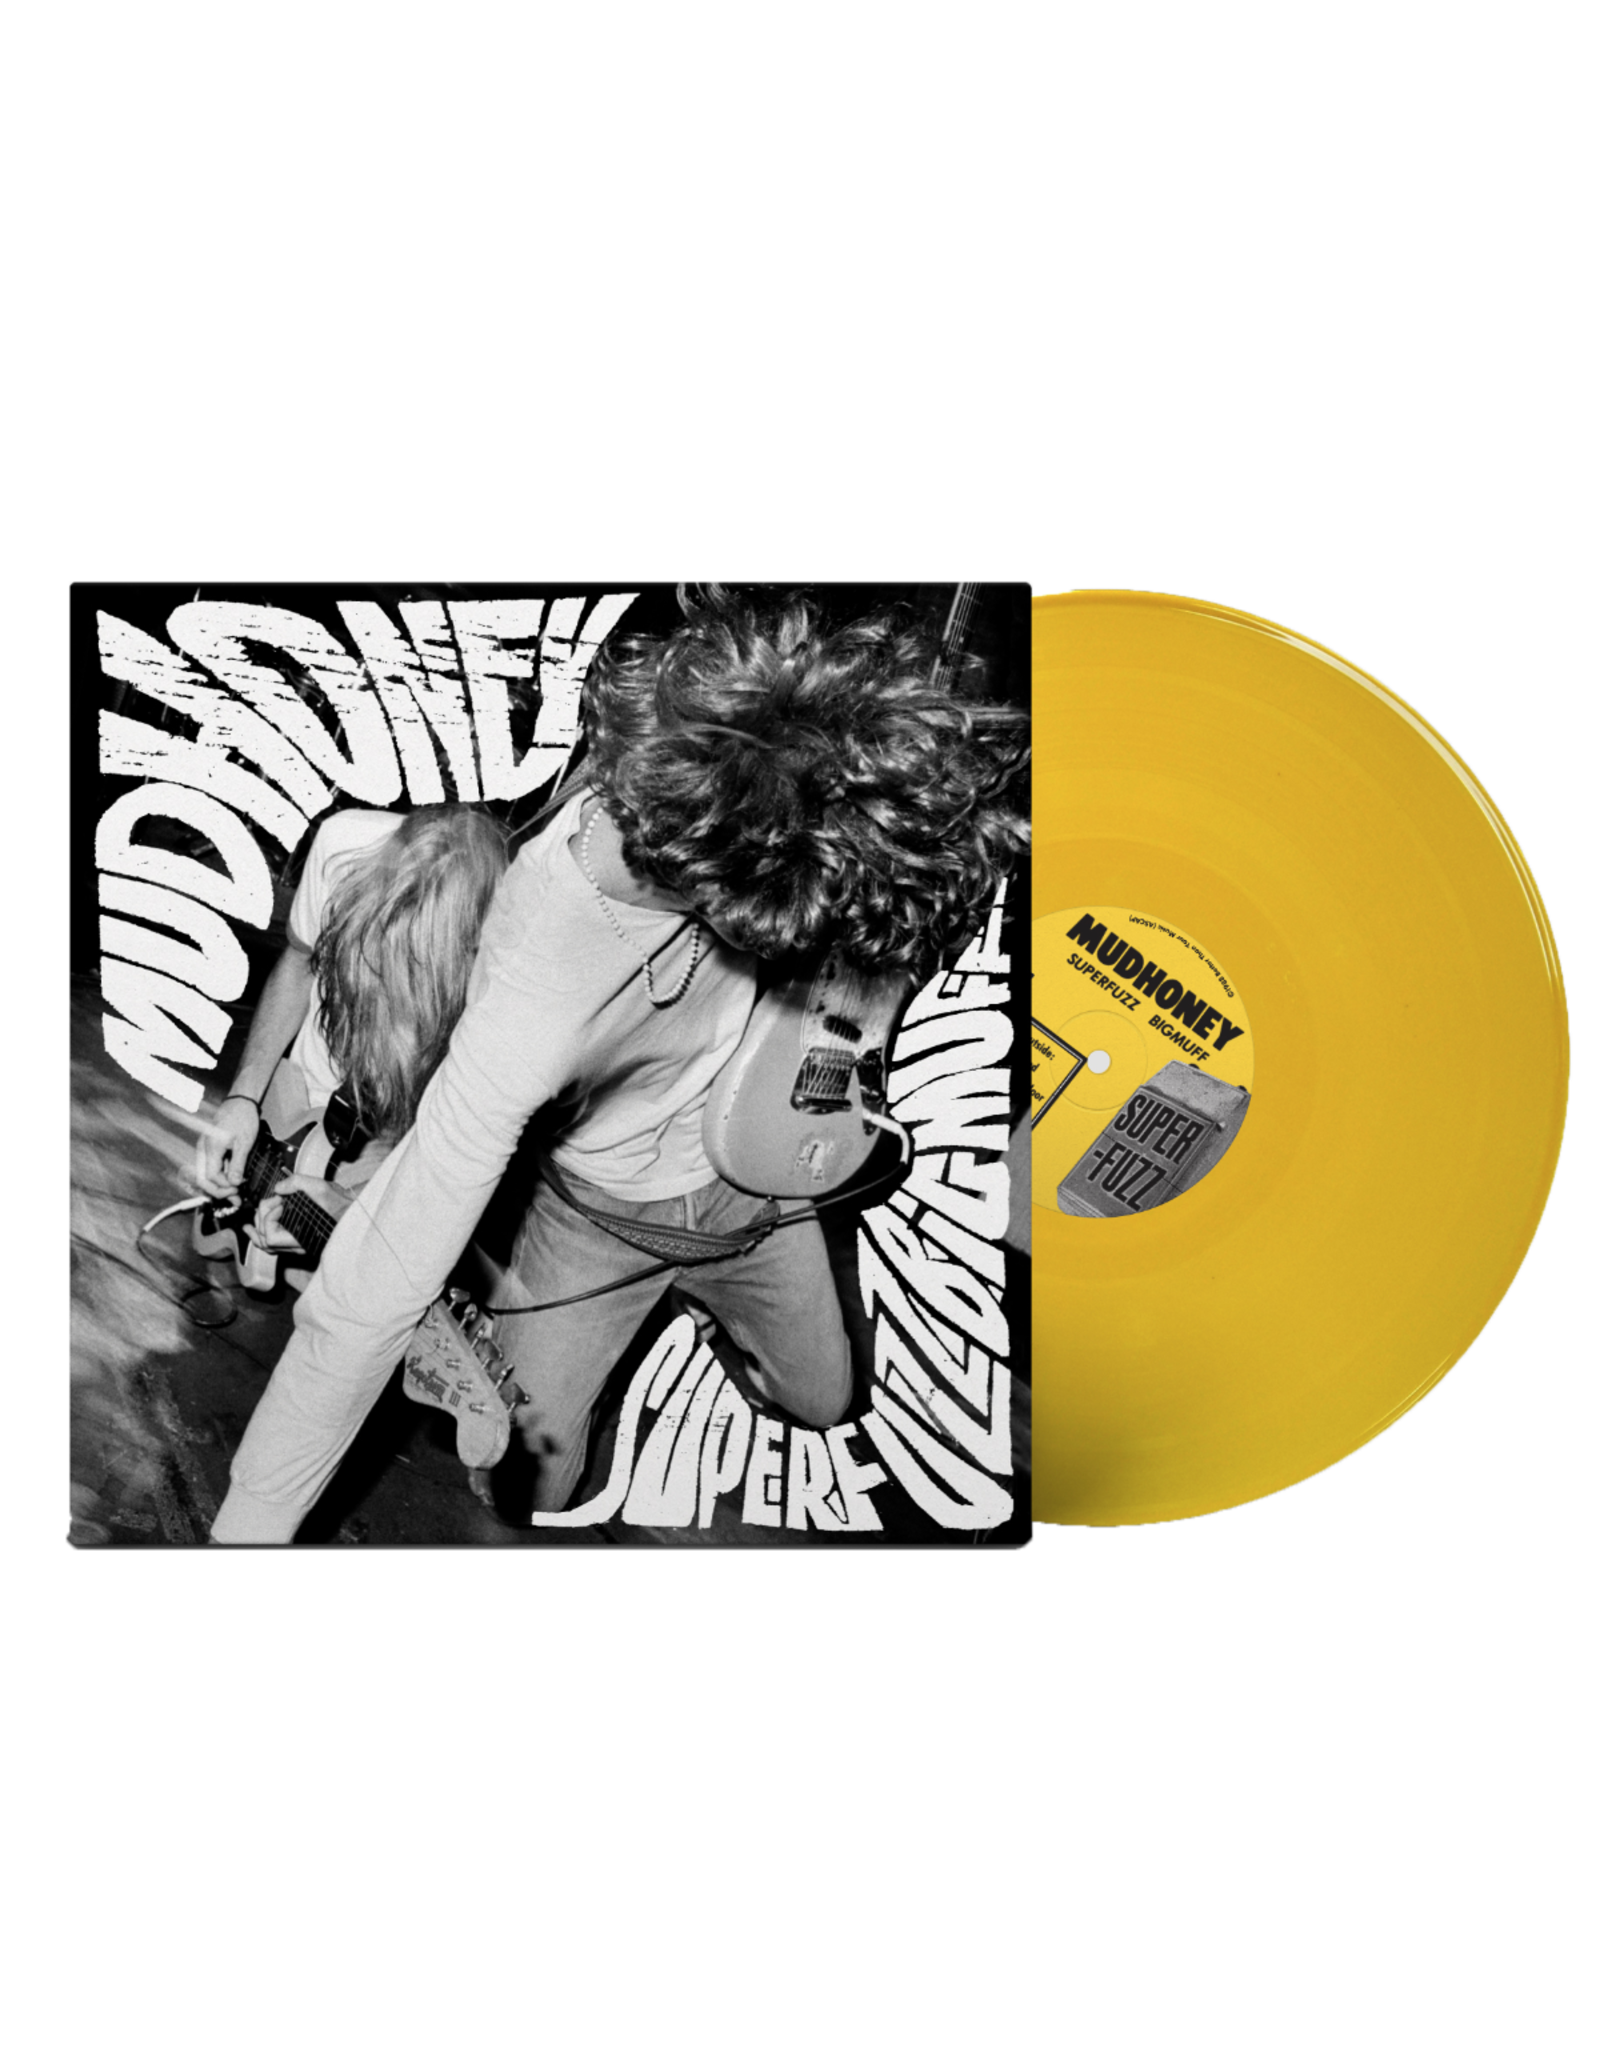 Mudhoney - Superfuzz Bigmuff (35th Anniversary) [Mustard Yellow Vinyl]